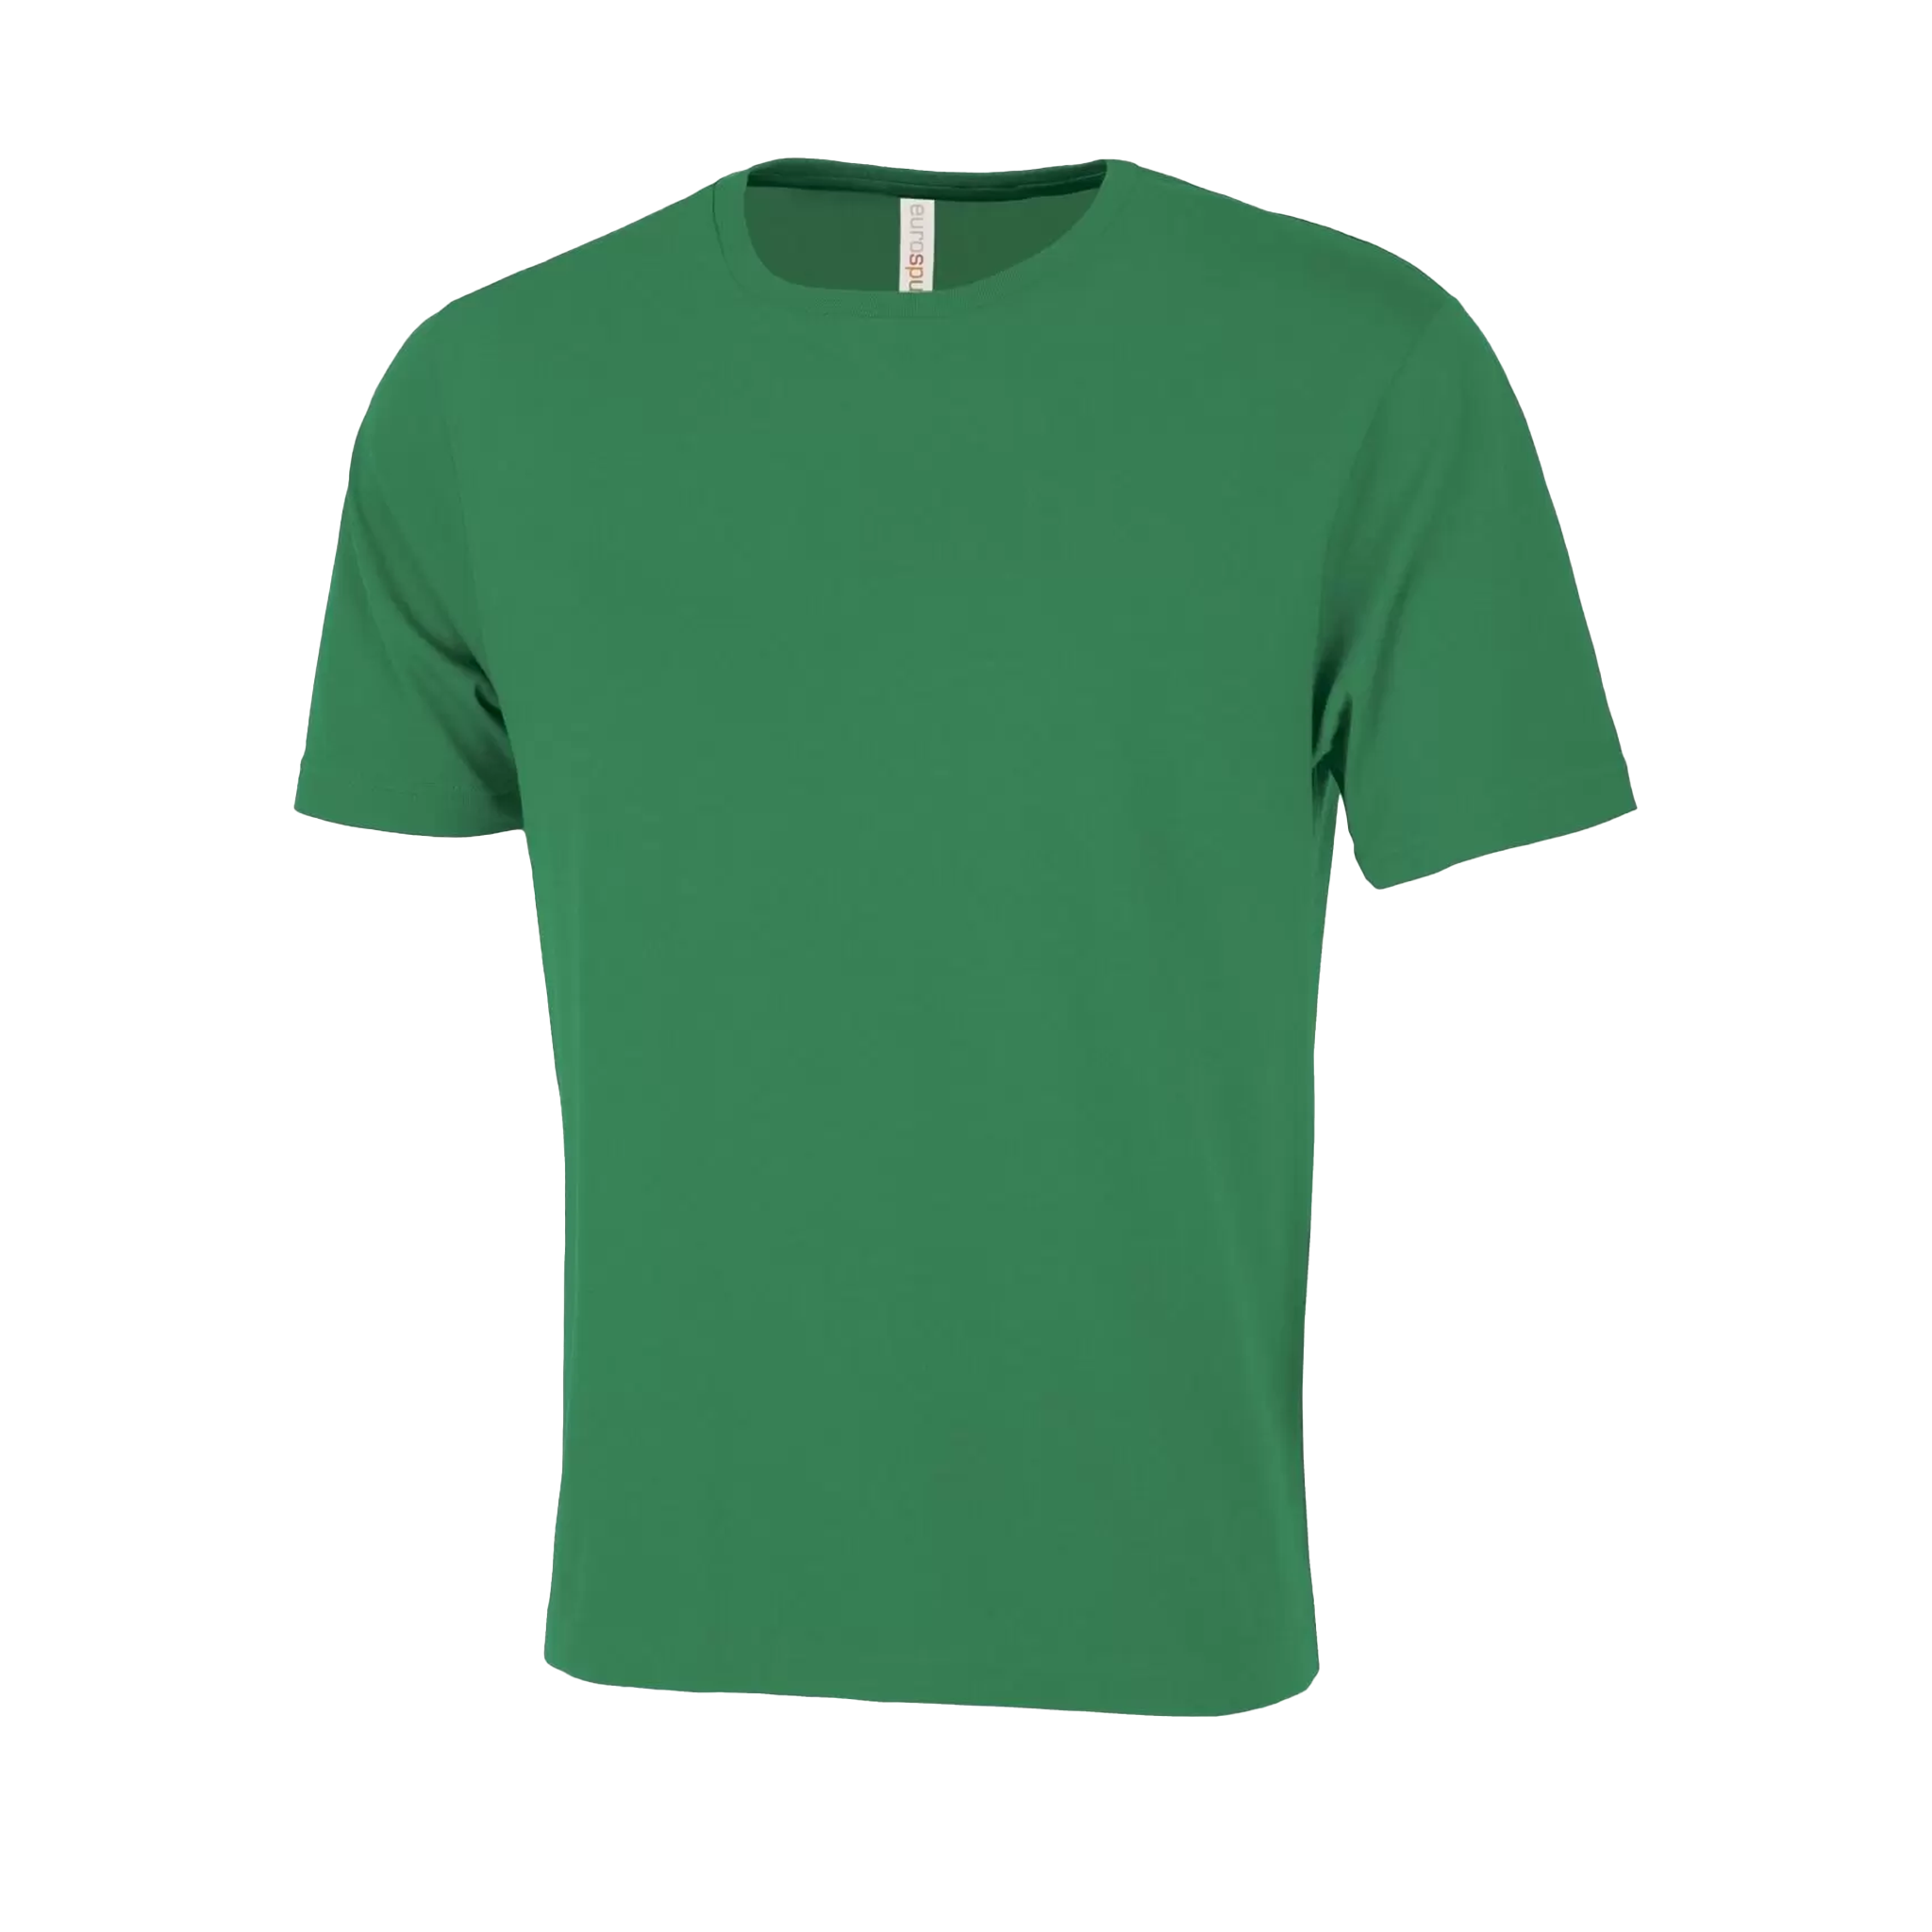 ATC Eurospun Ring Spun T-Shirt - Men's Sizing XS-4XL - Green